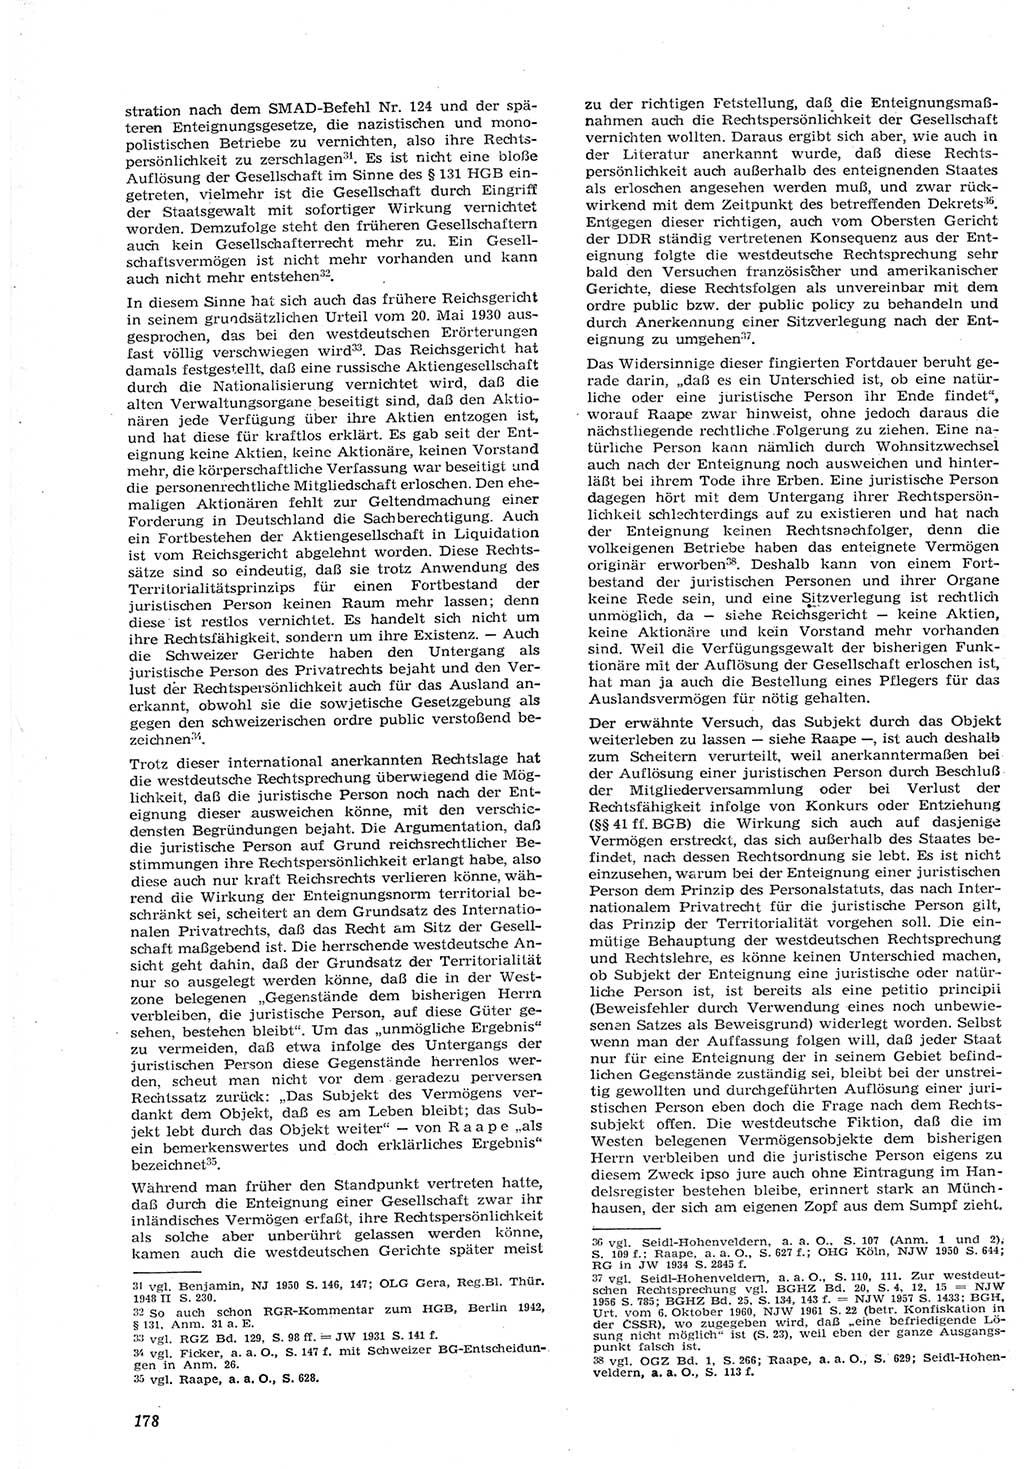 Neue Justiz (NJ), Zeitschrift für Recht und Rechtswissenschaft [Deutsche Demokratische Republik (DDR)], 15. Jahrgang 1961, Seite 178 (NJ DDR 1961, S. 178)